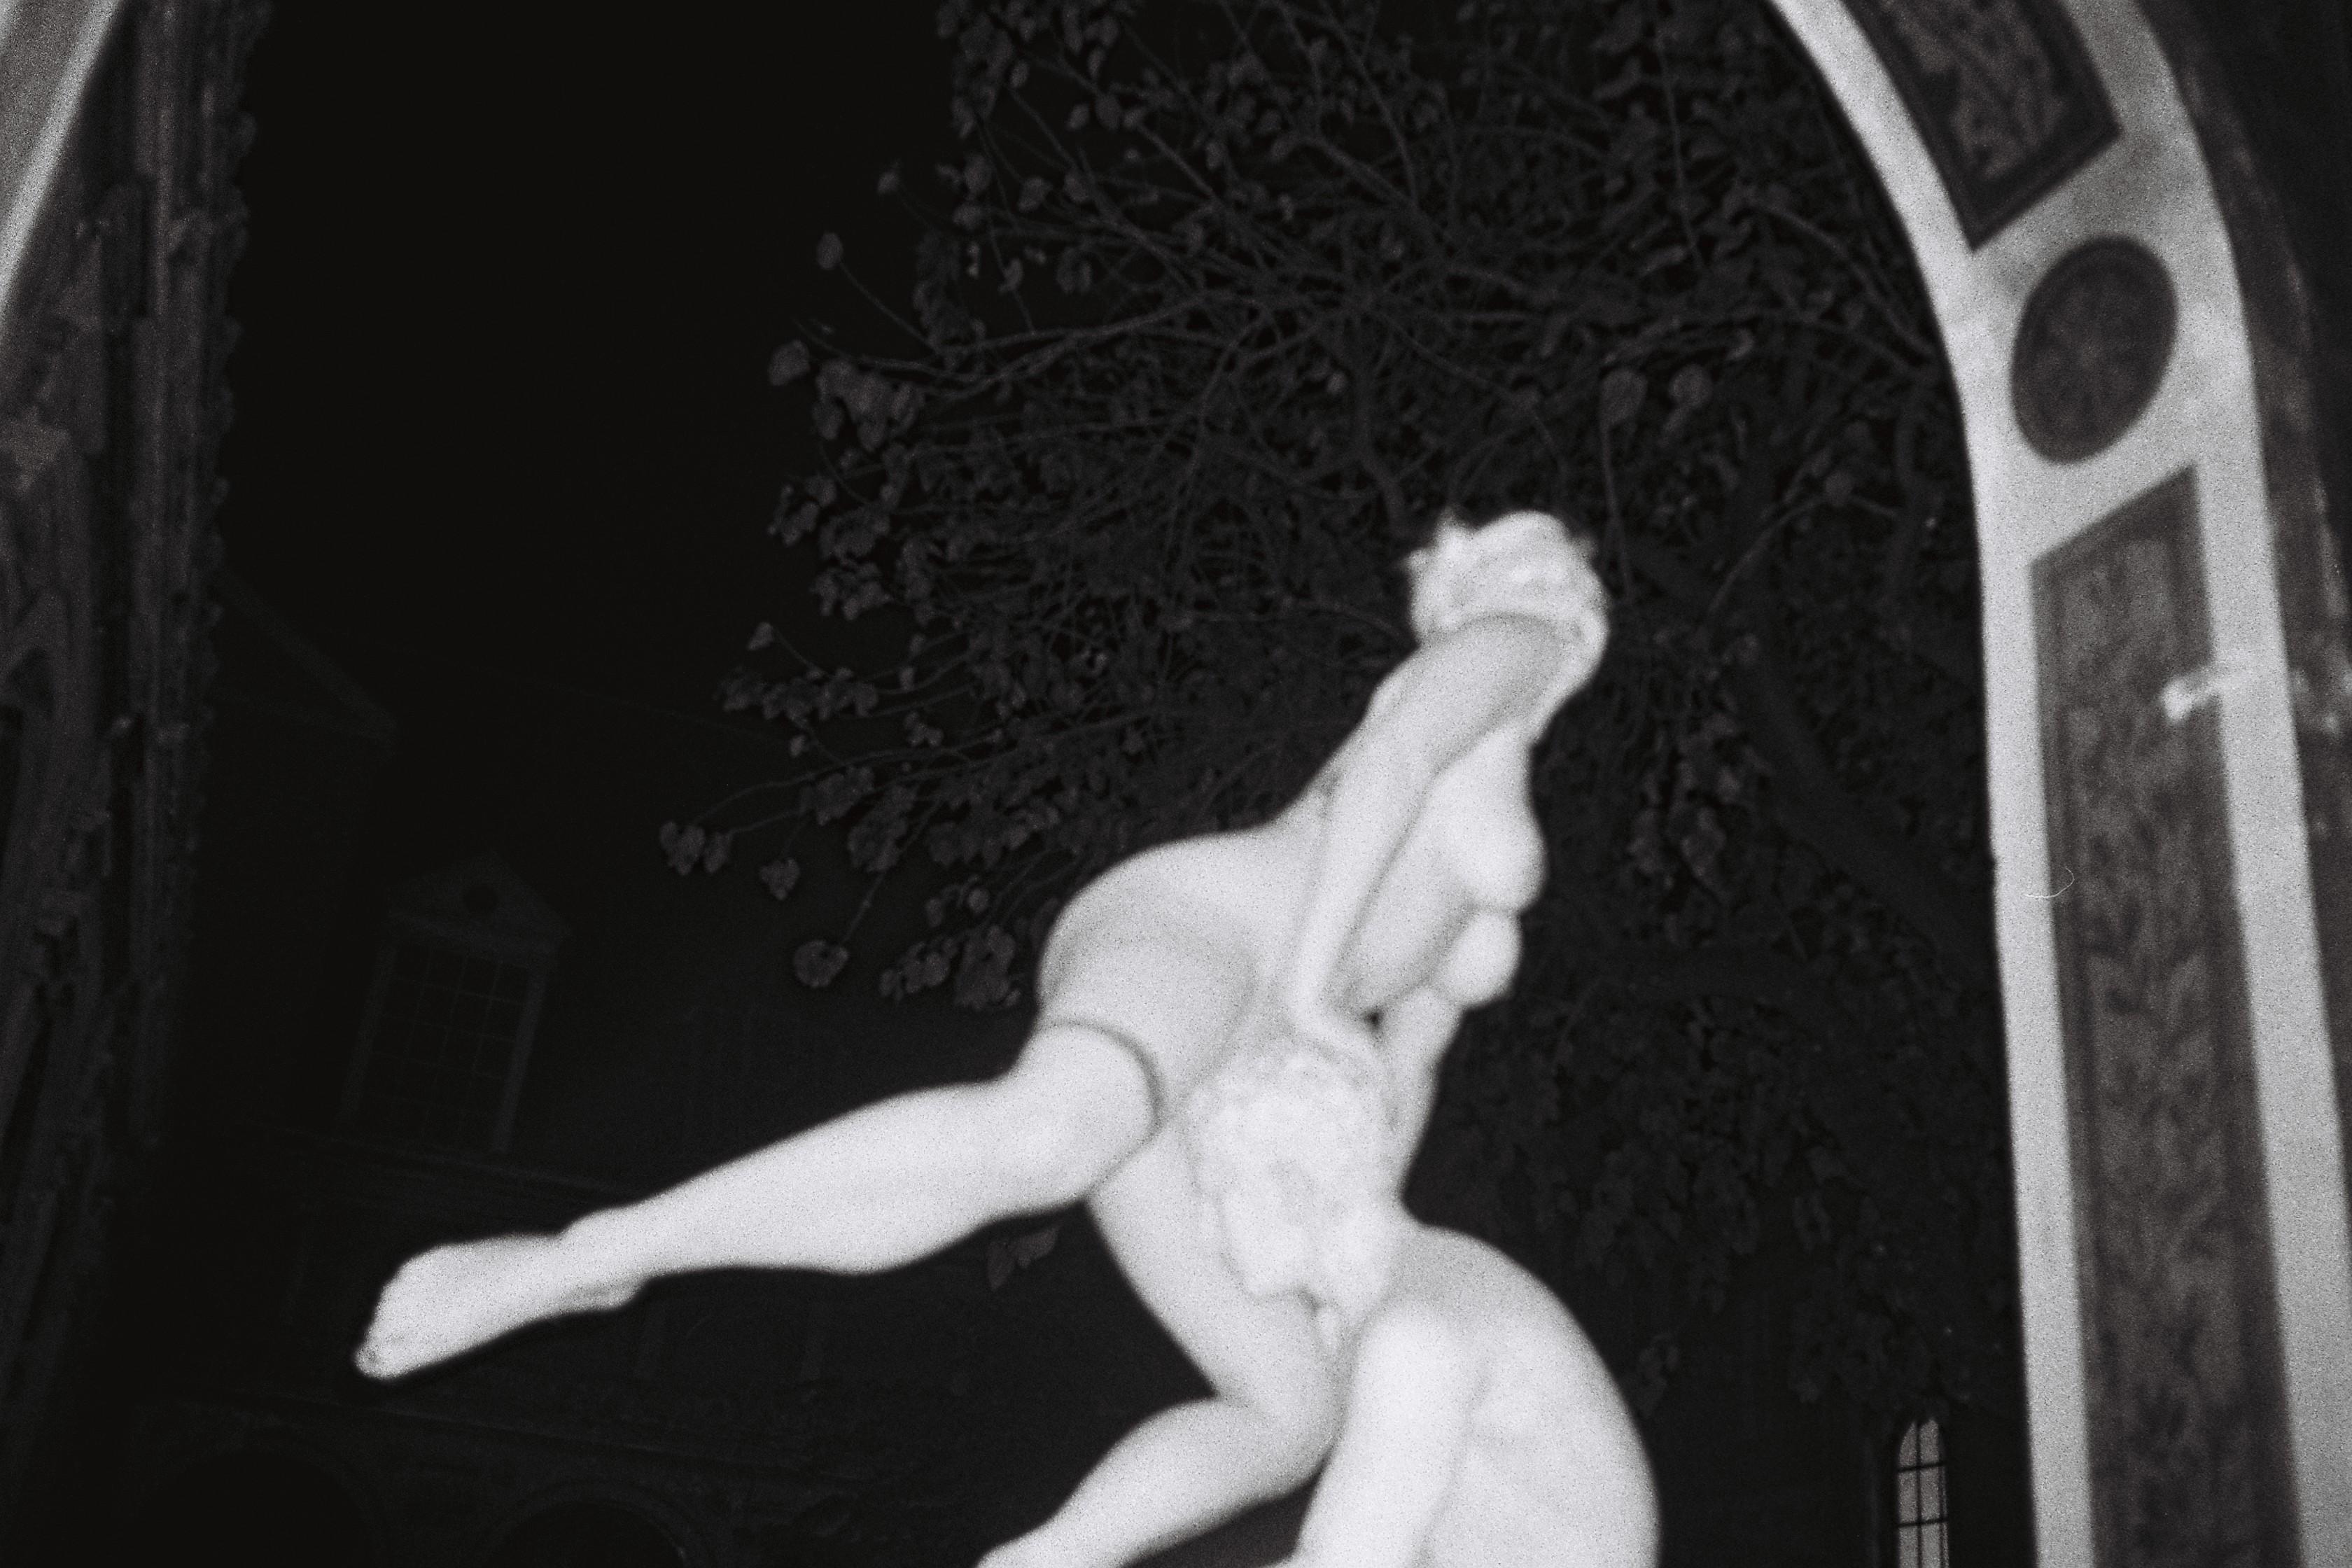 Marianne Marić
Attentat, 2015
Silber-Gelatine-Druck
80 x 120 cm (31 1/2 x 47 1/4 Zoll)
Auflage von 5, plus 2 AP; Ed. Nr. 1/5
Nur drucken

Marianne Marić betrachtet den Körper als Architektur und spielt in ihrem Werk mit Symbolen, wobei sie oft ihre